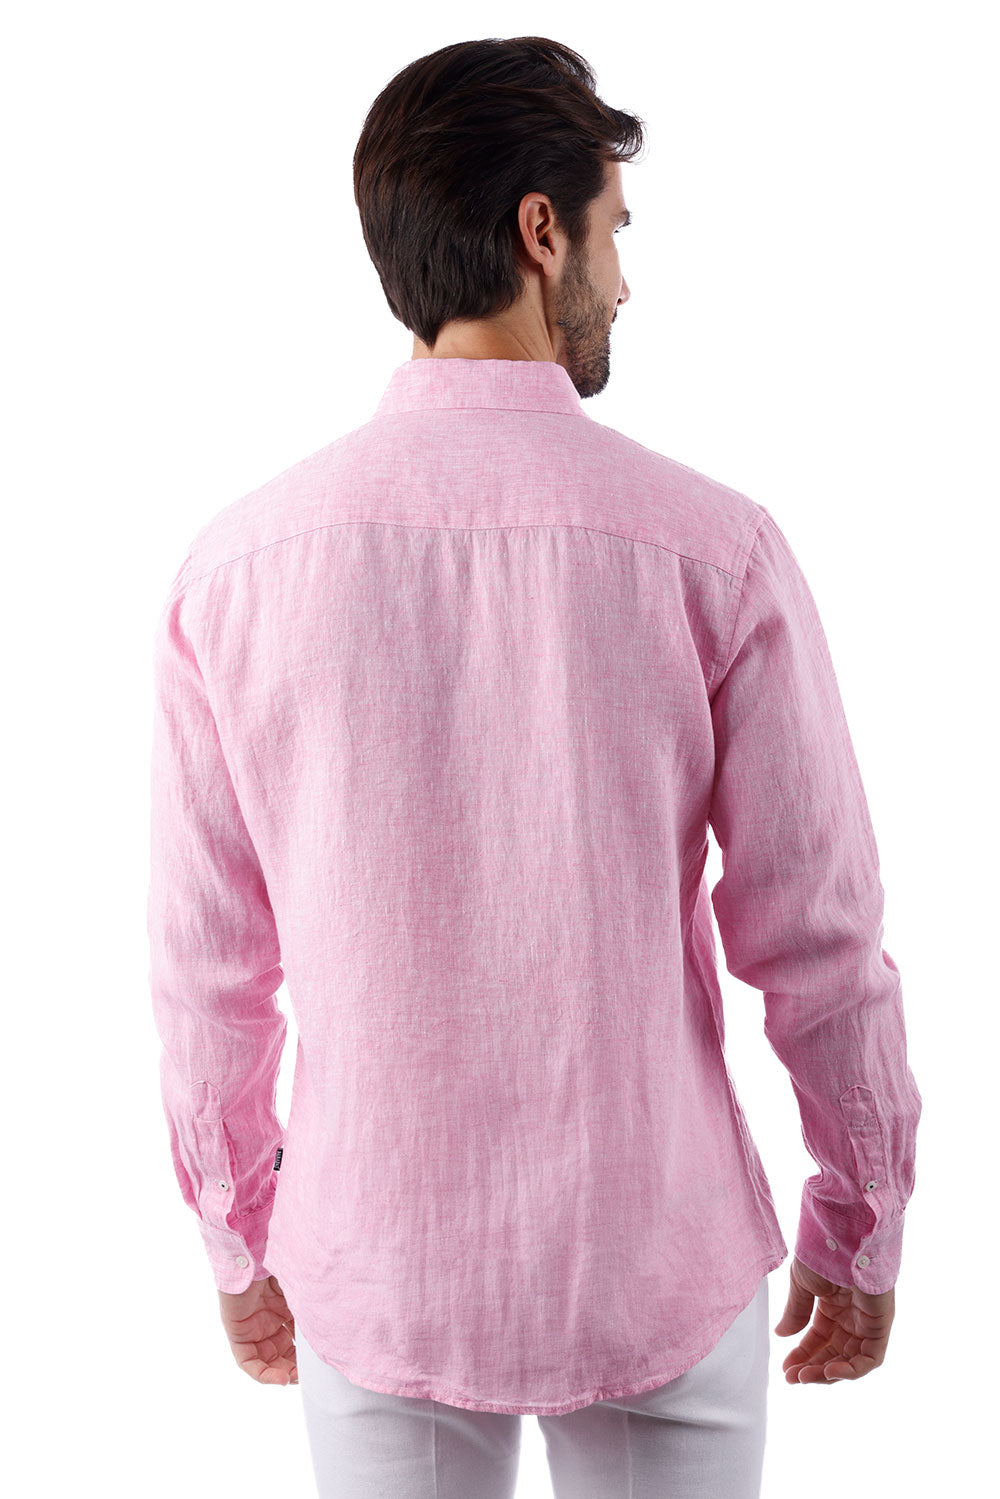 BARABAS Men's Linen Lightweight Button Down Long Sleeve Shirt 4B30 Pink